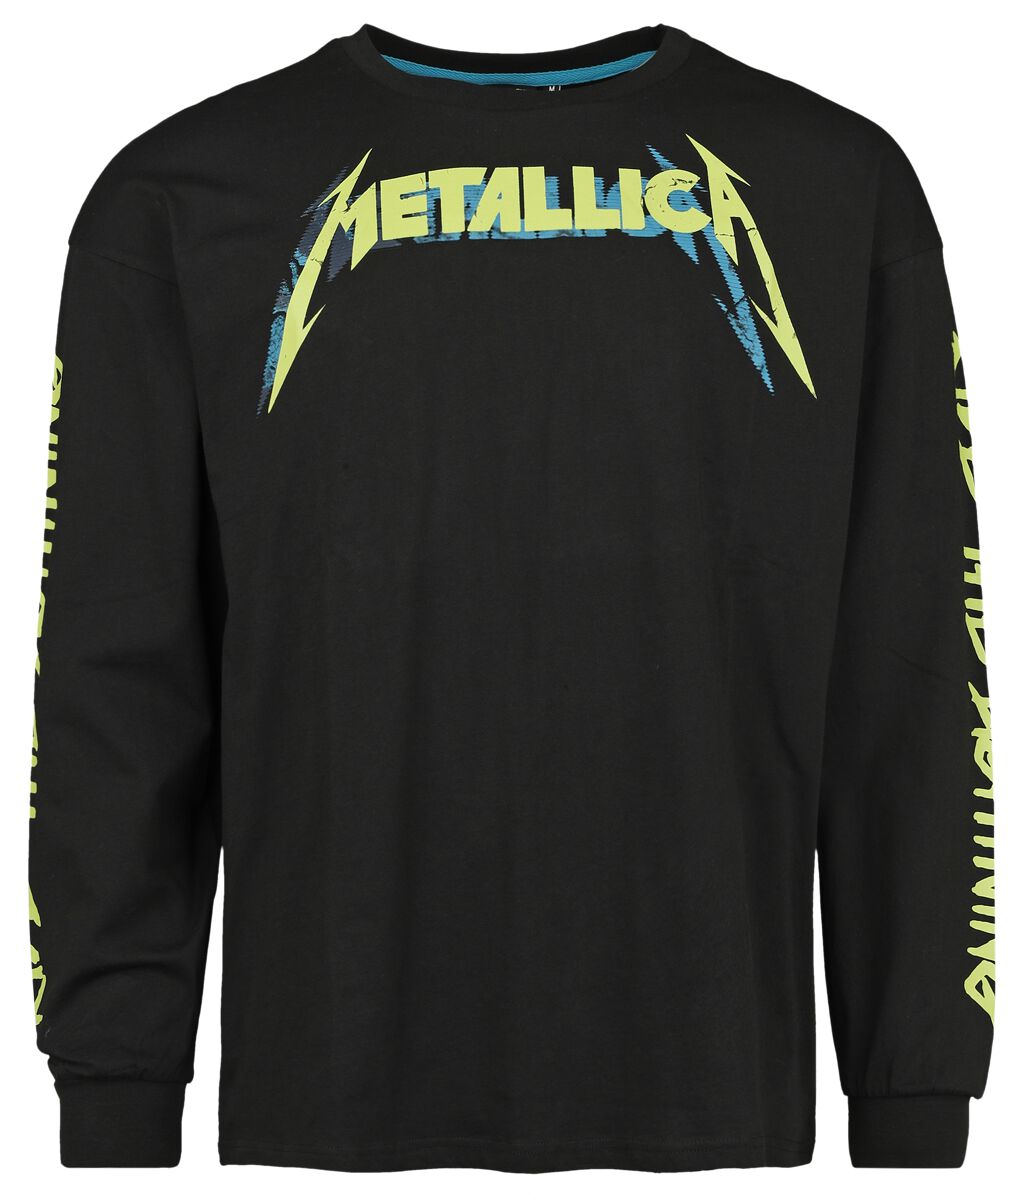 Metallica Langarmshirt - EMP Signature Collection - Oversize - S bis 3XL - für Männer - Größe 3XL - schwarz  - EMP exklusives Merchandise!